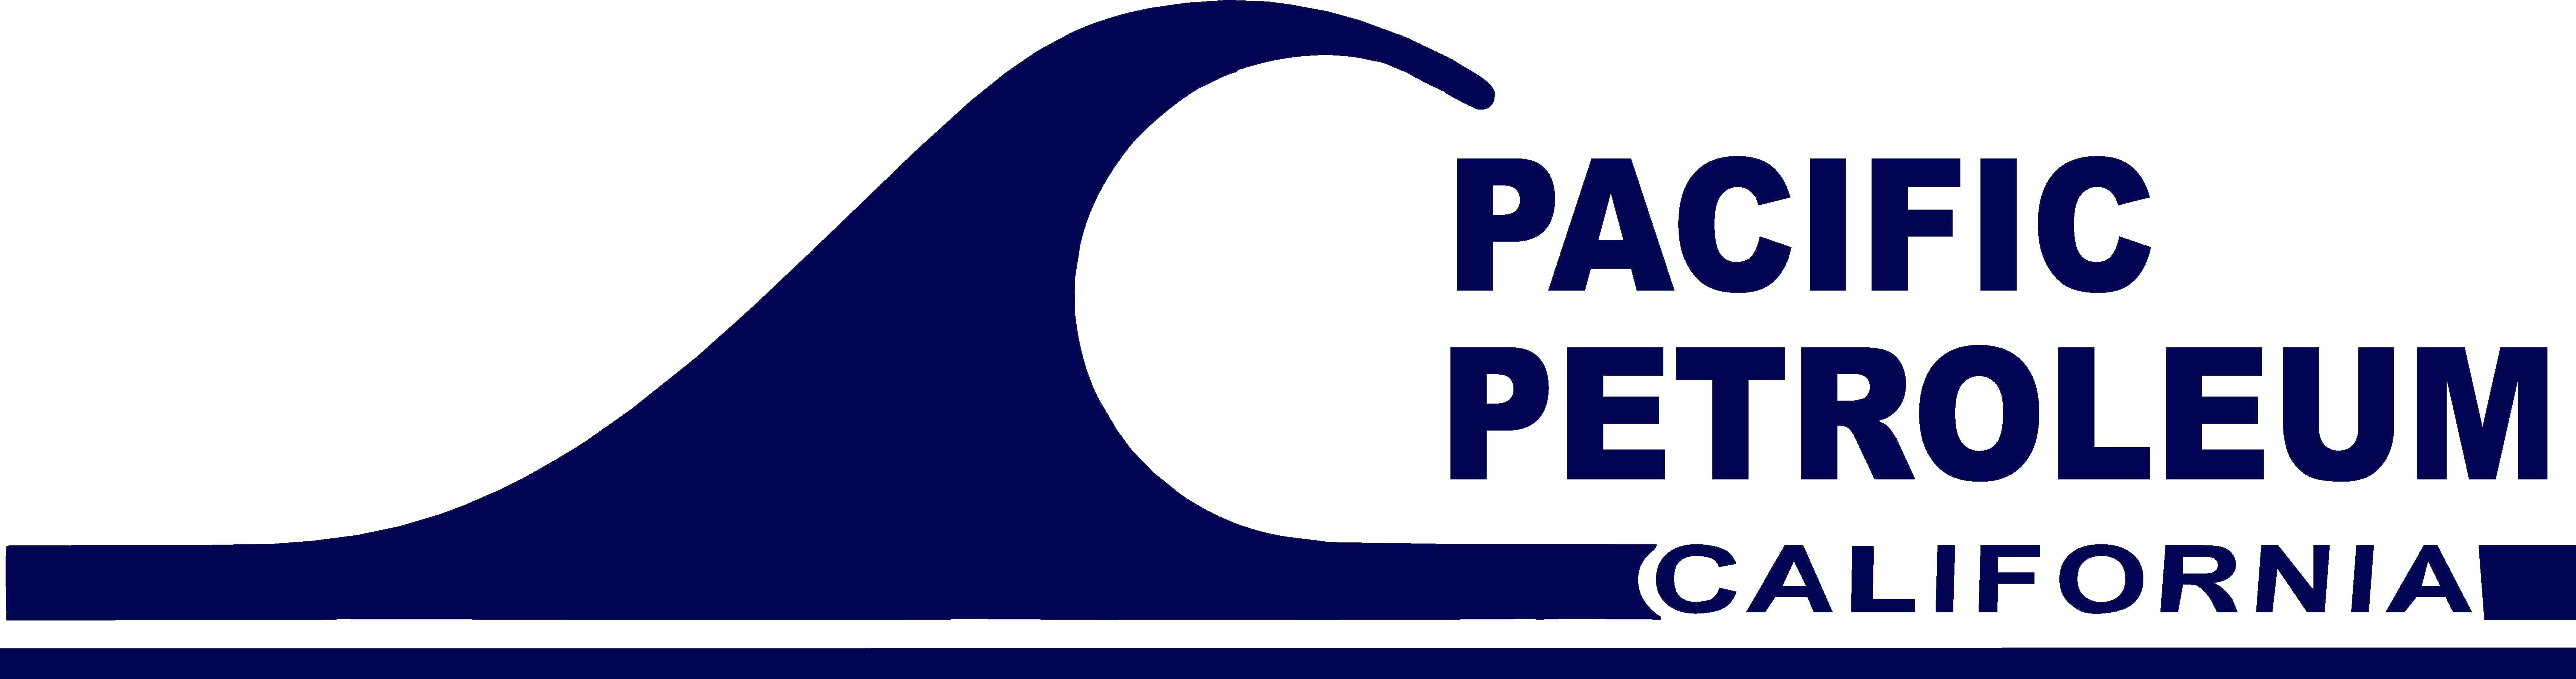 Pacific Petroleum